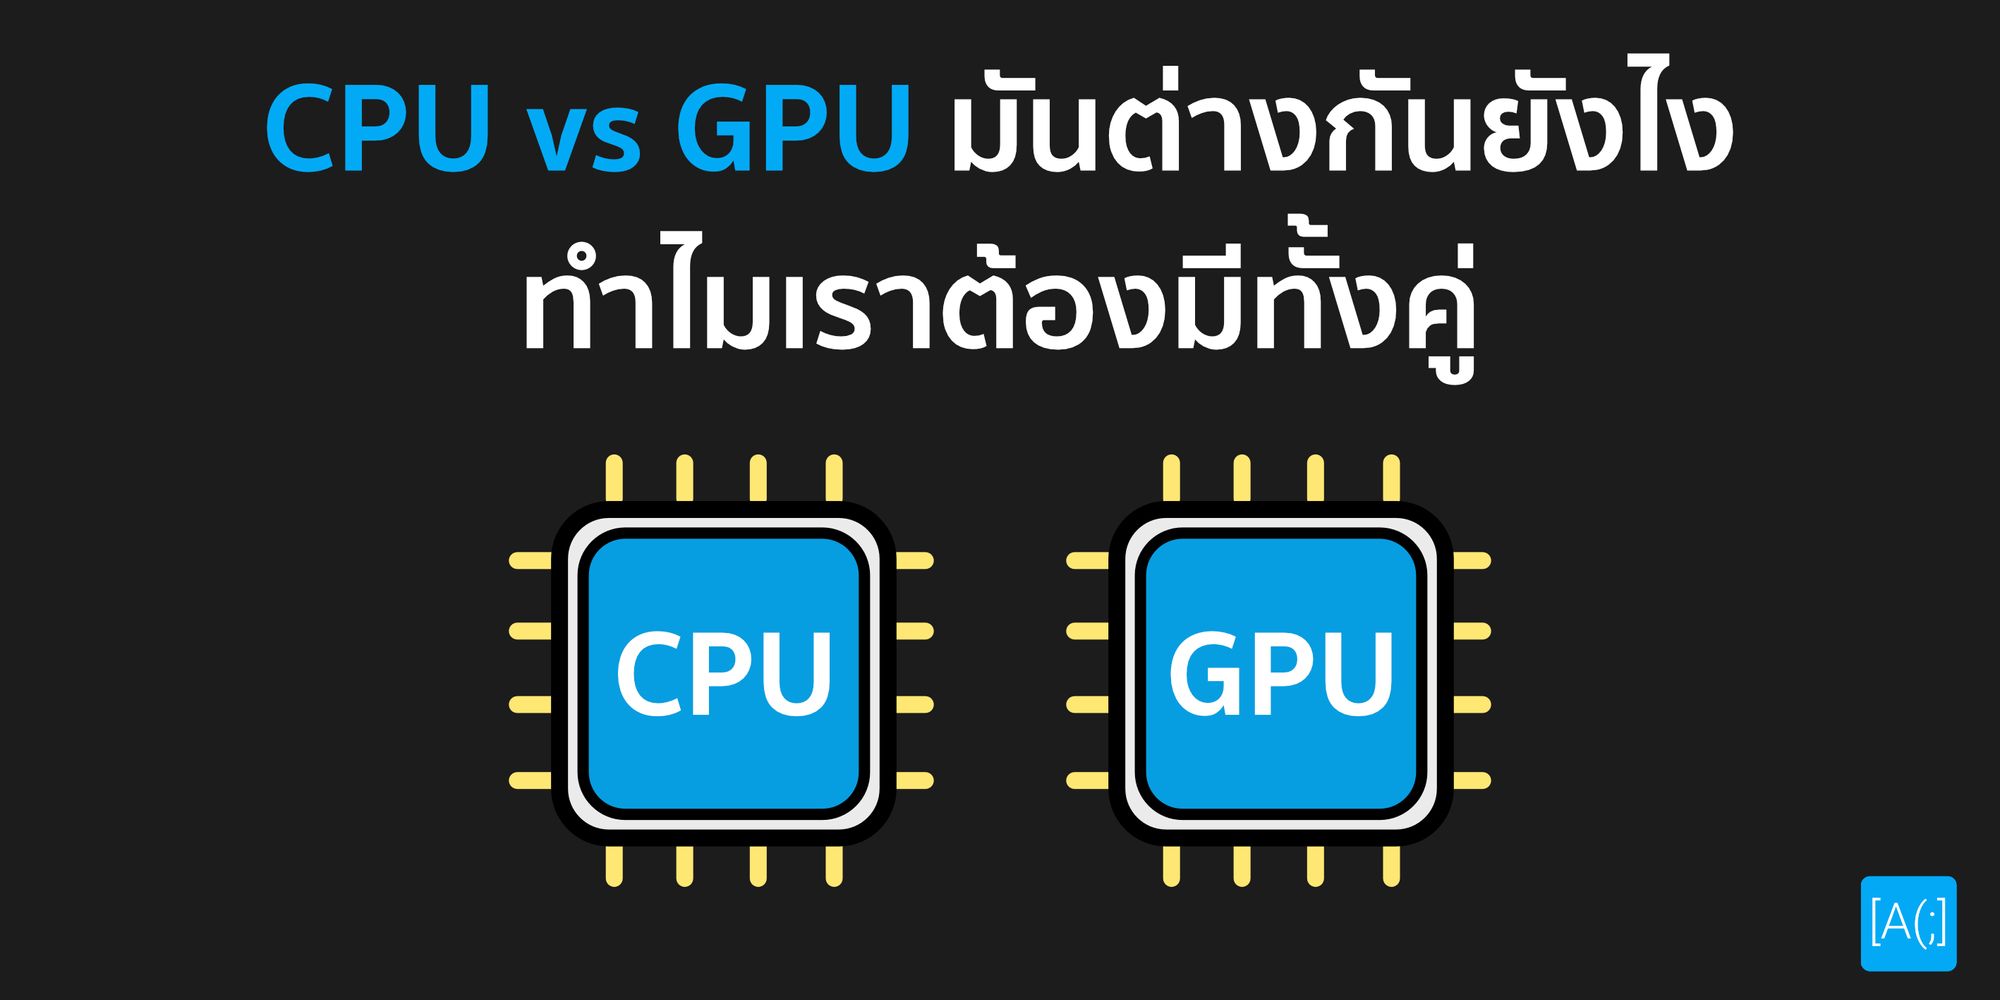 CPU vs GPU มันต่างกันยังไง ทำไมเราต้องมีทั้งคู่